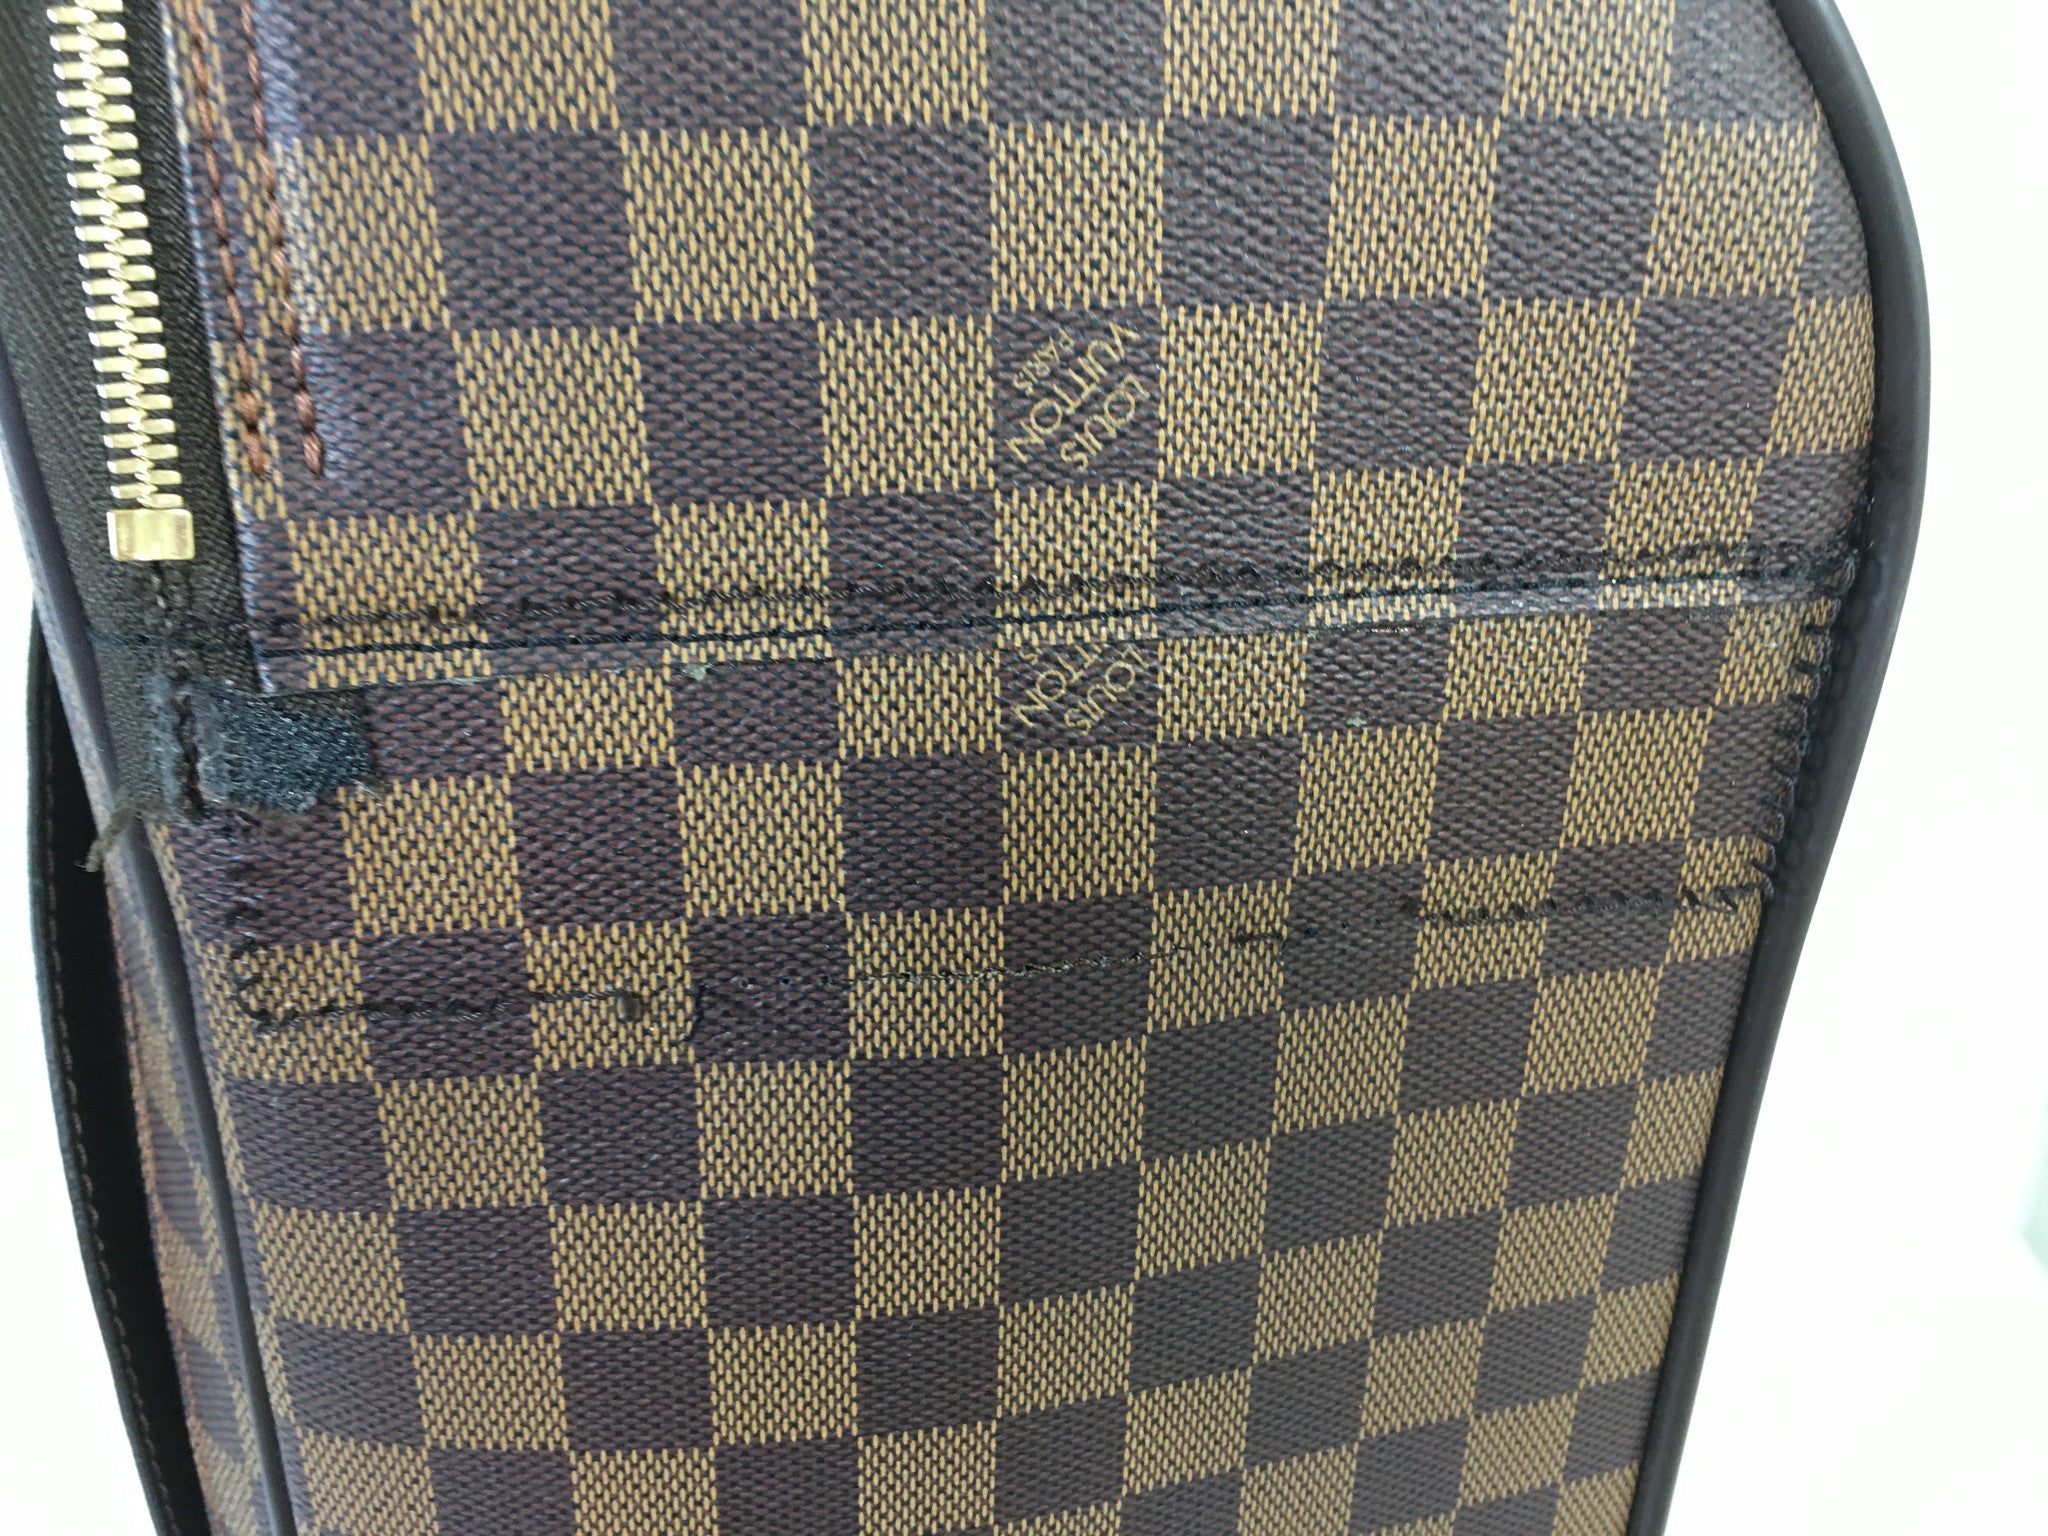 Authentic Louis Vuitton Pégase Business 55 Rolling Suitcase